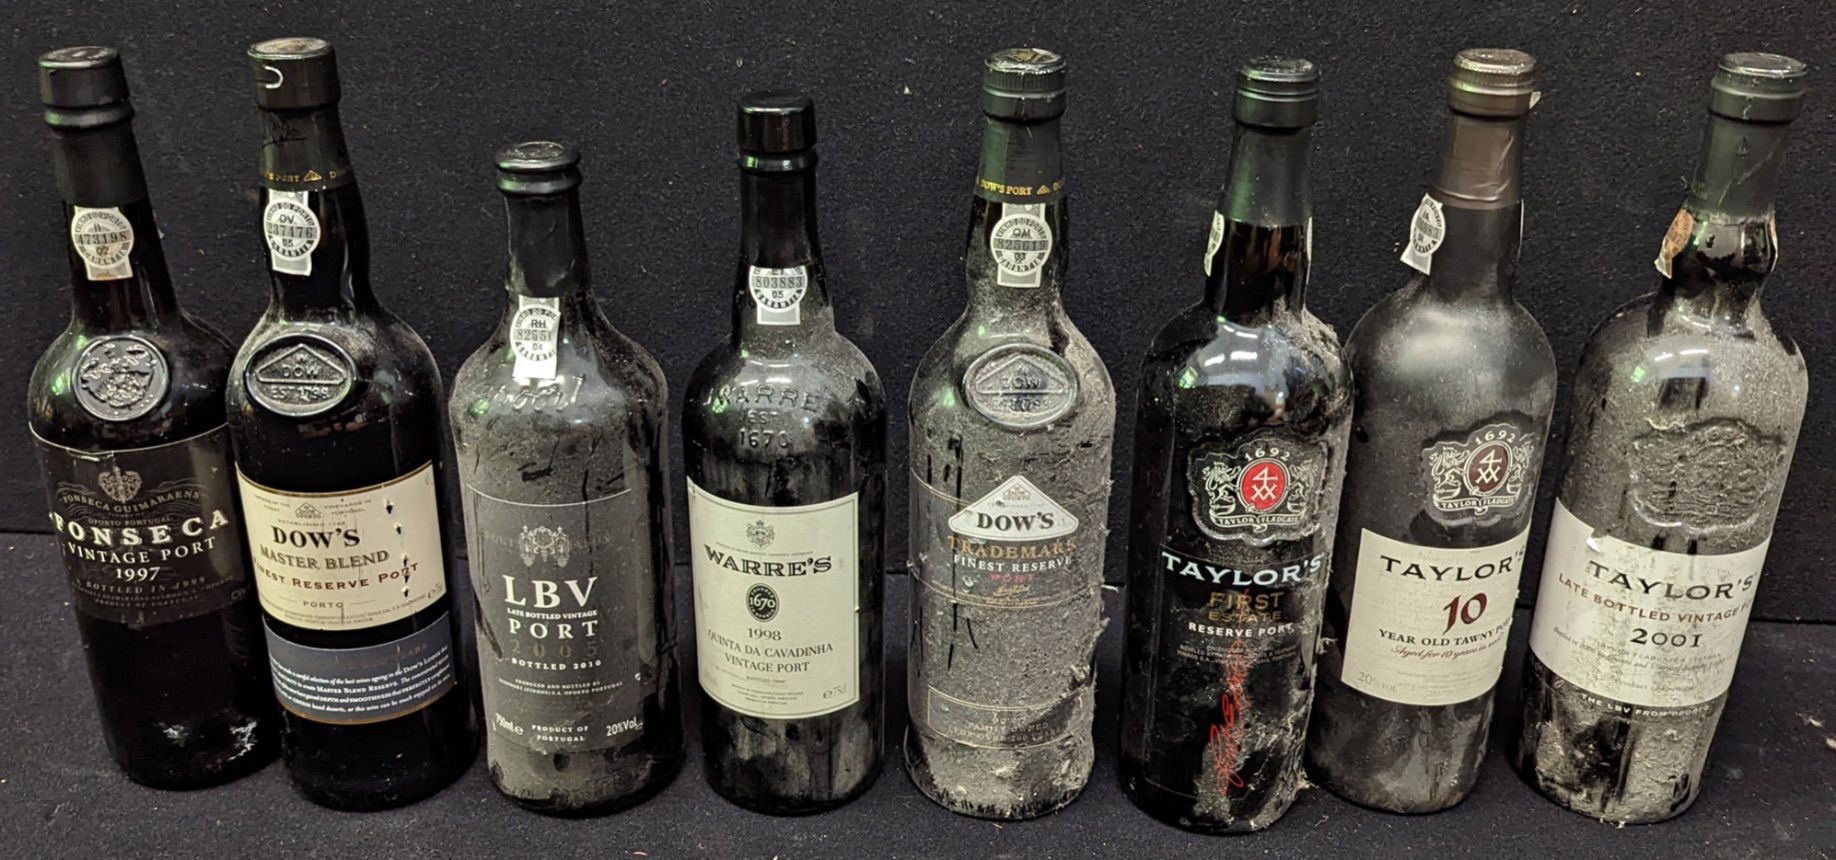 Taylors 8 bouteilles de Porto, dont des Taylor's, Dow's, Warre's, etc.